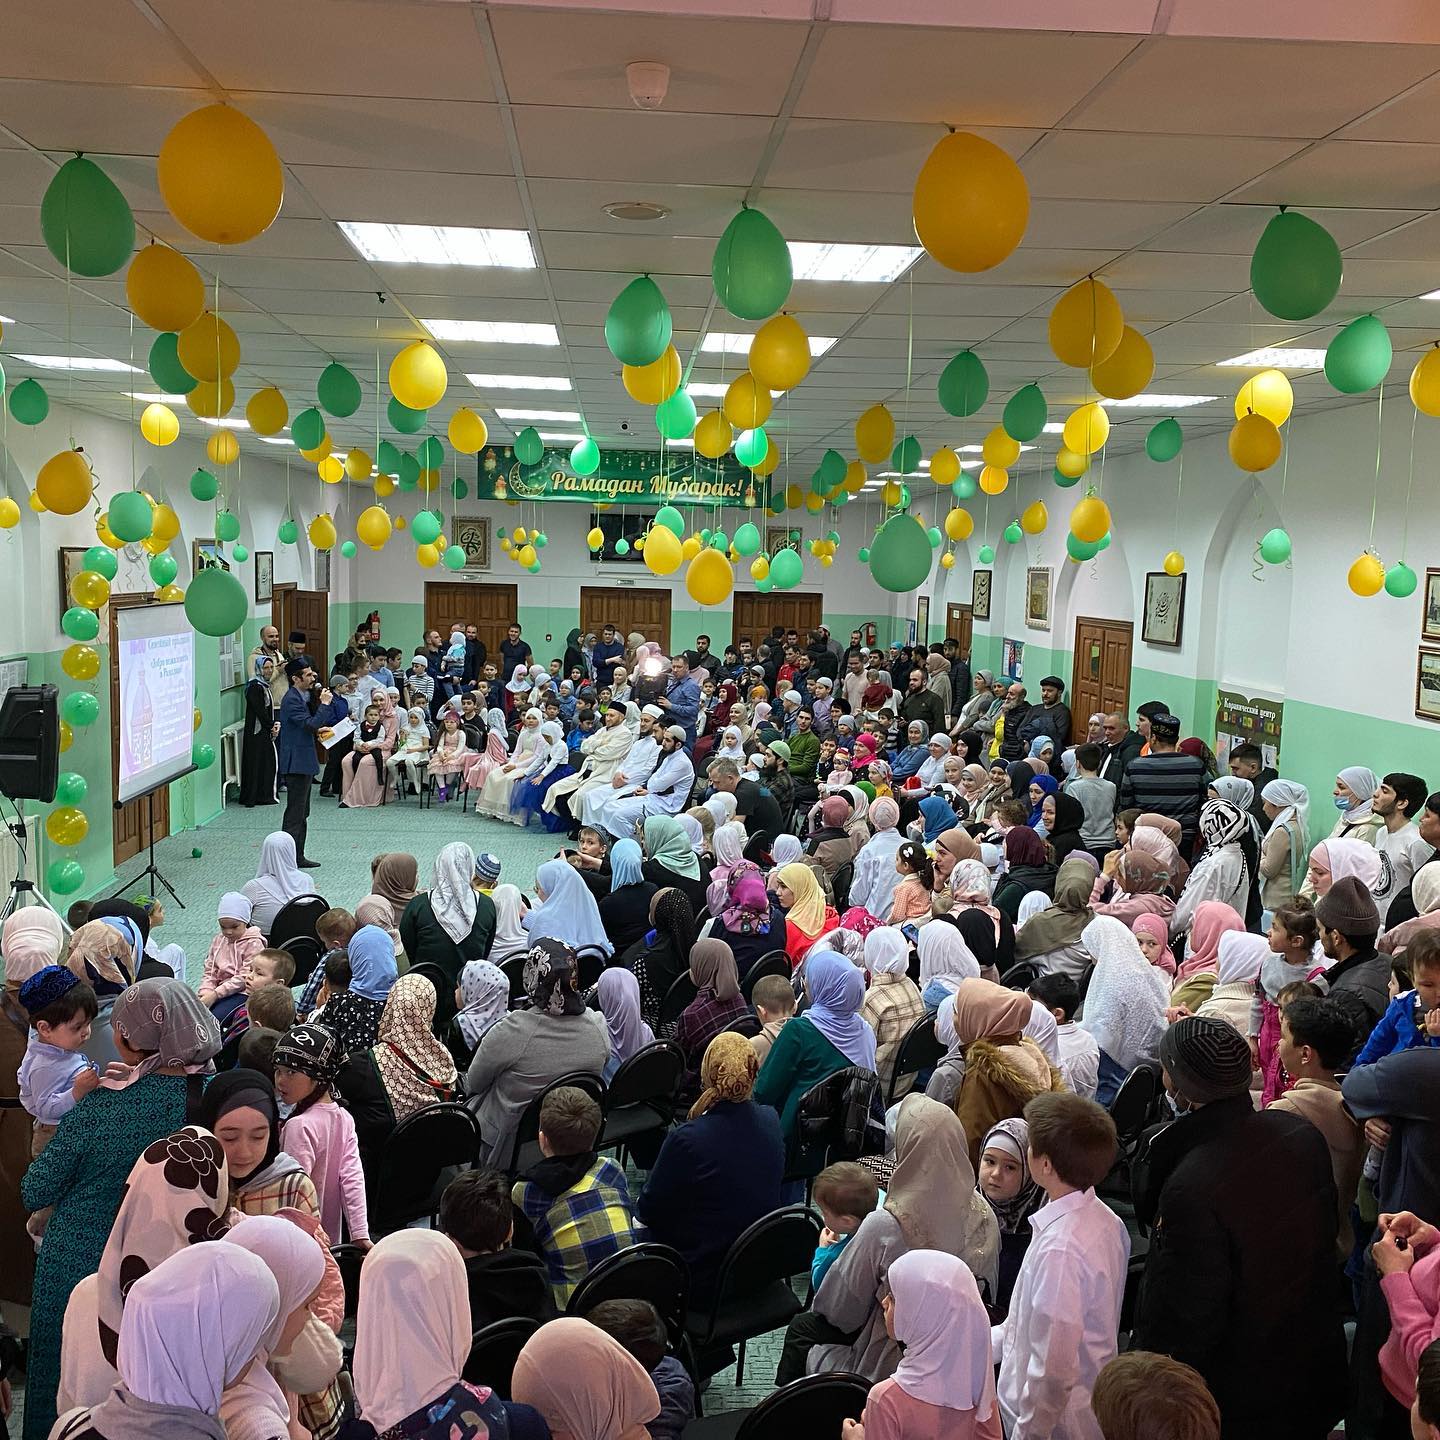 احتفالية "أهلًا رمضان" التي نظمت داخل المركز الإسلامي في مدينة سراتوف شملت معارض متعددة لمنتجات كثيرة متعددة للنساء والأطفال والعائلات.